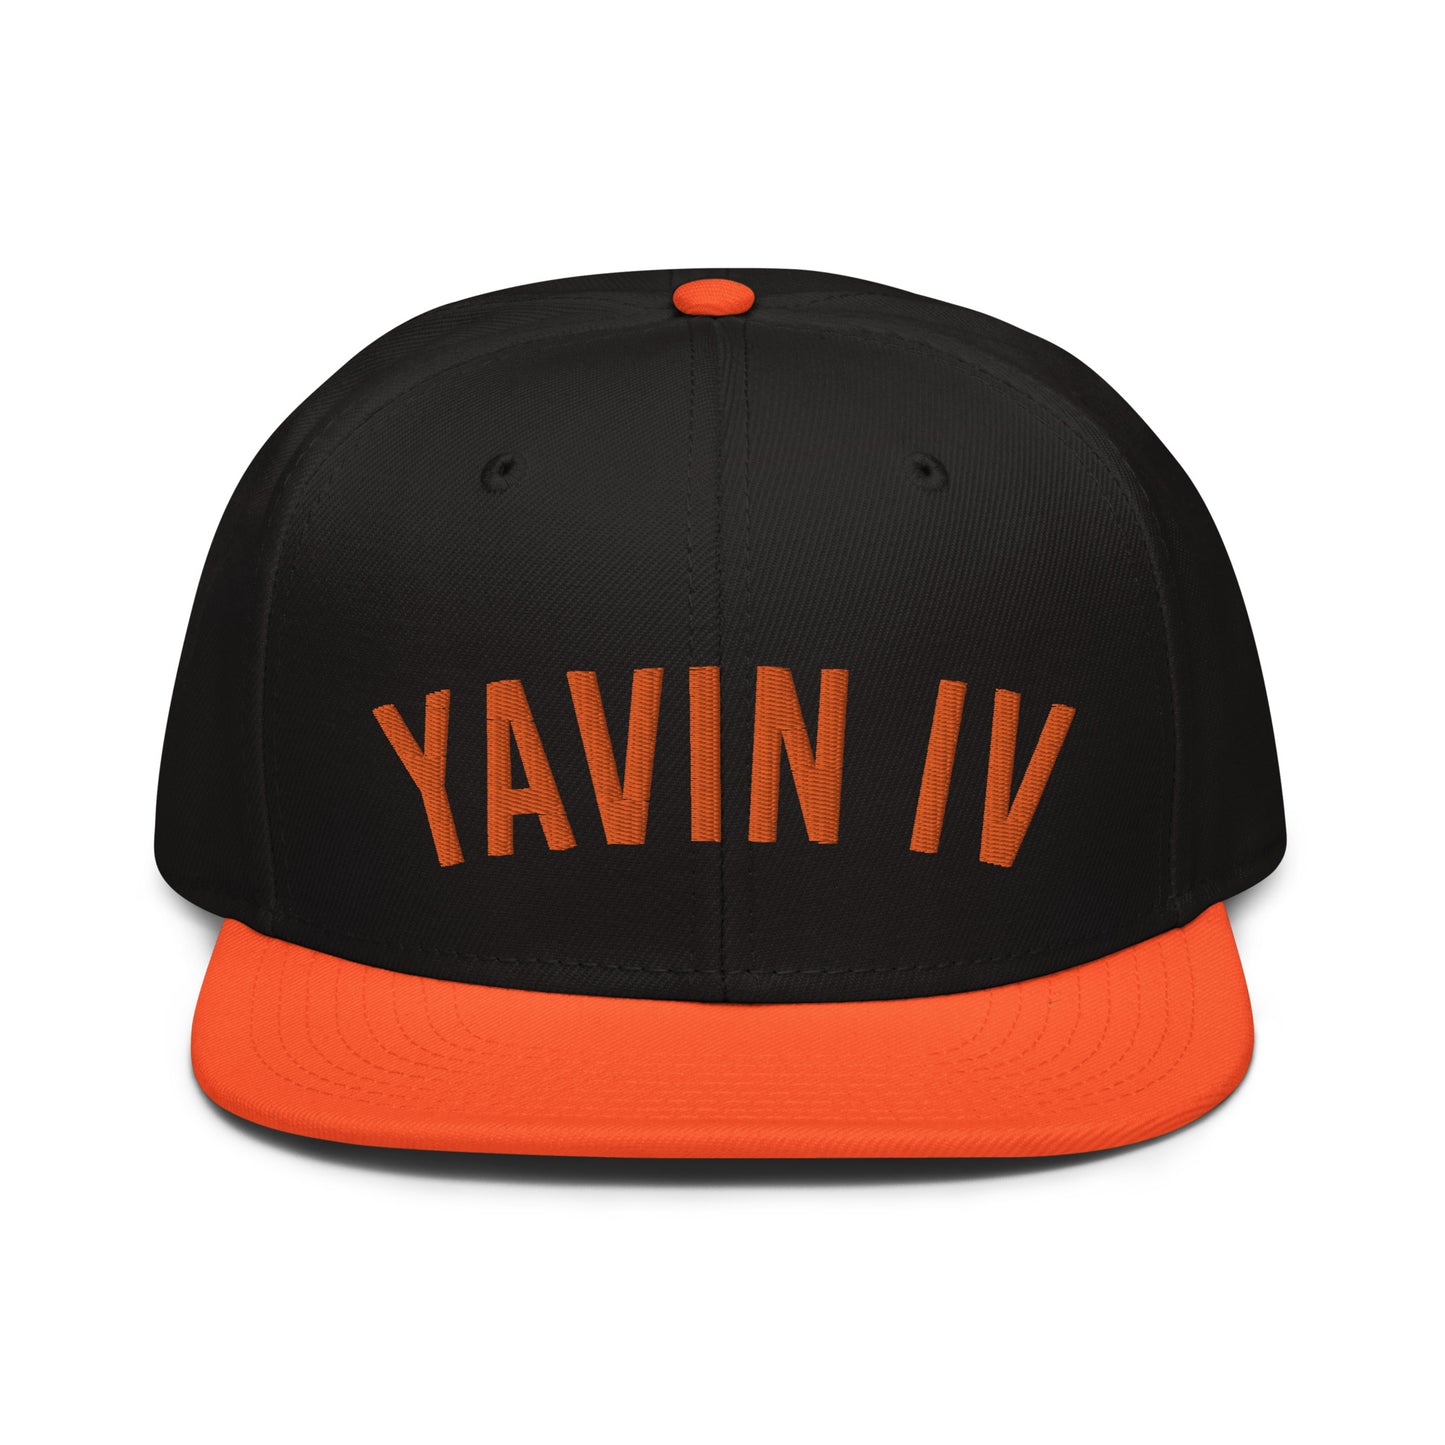 Yavin VI Home Team snapback hat